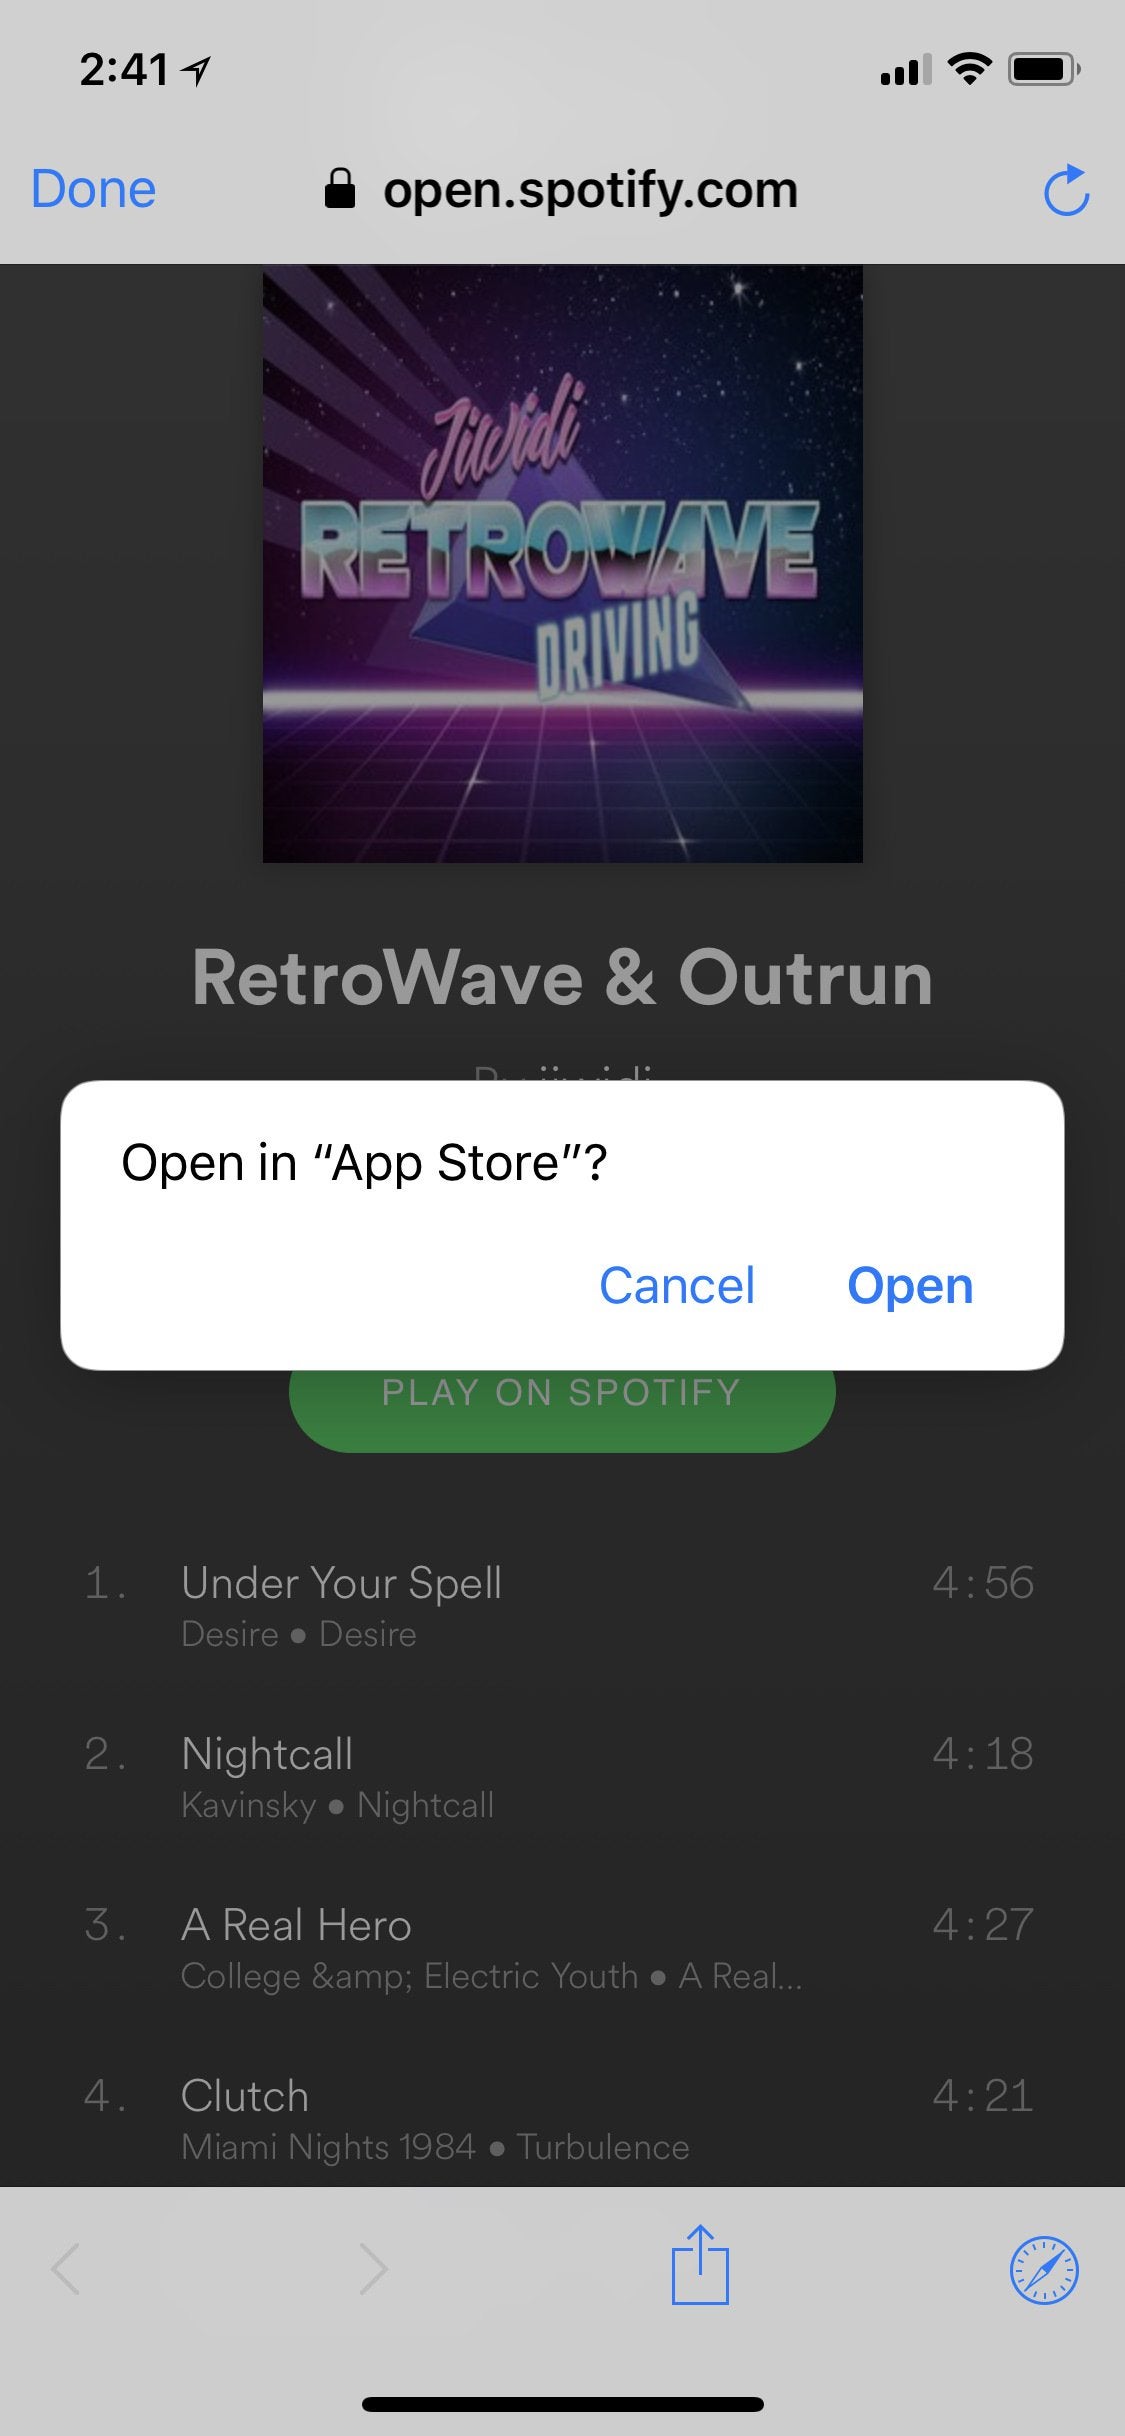 Spotify Open Playlist Link In App